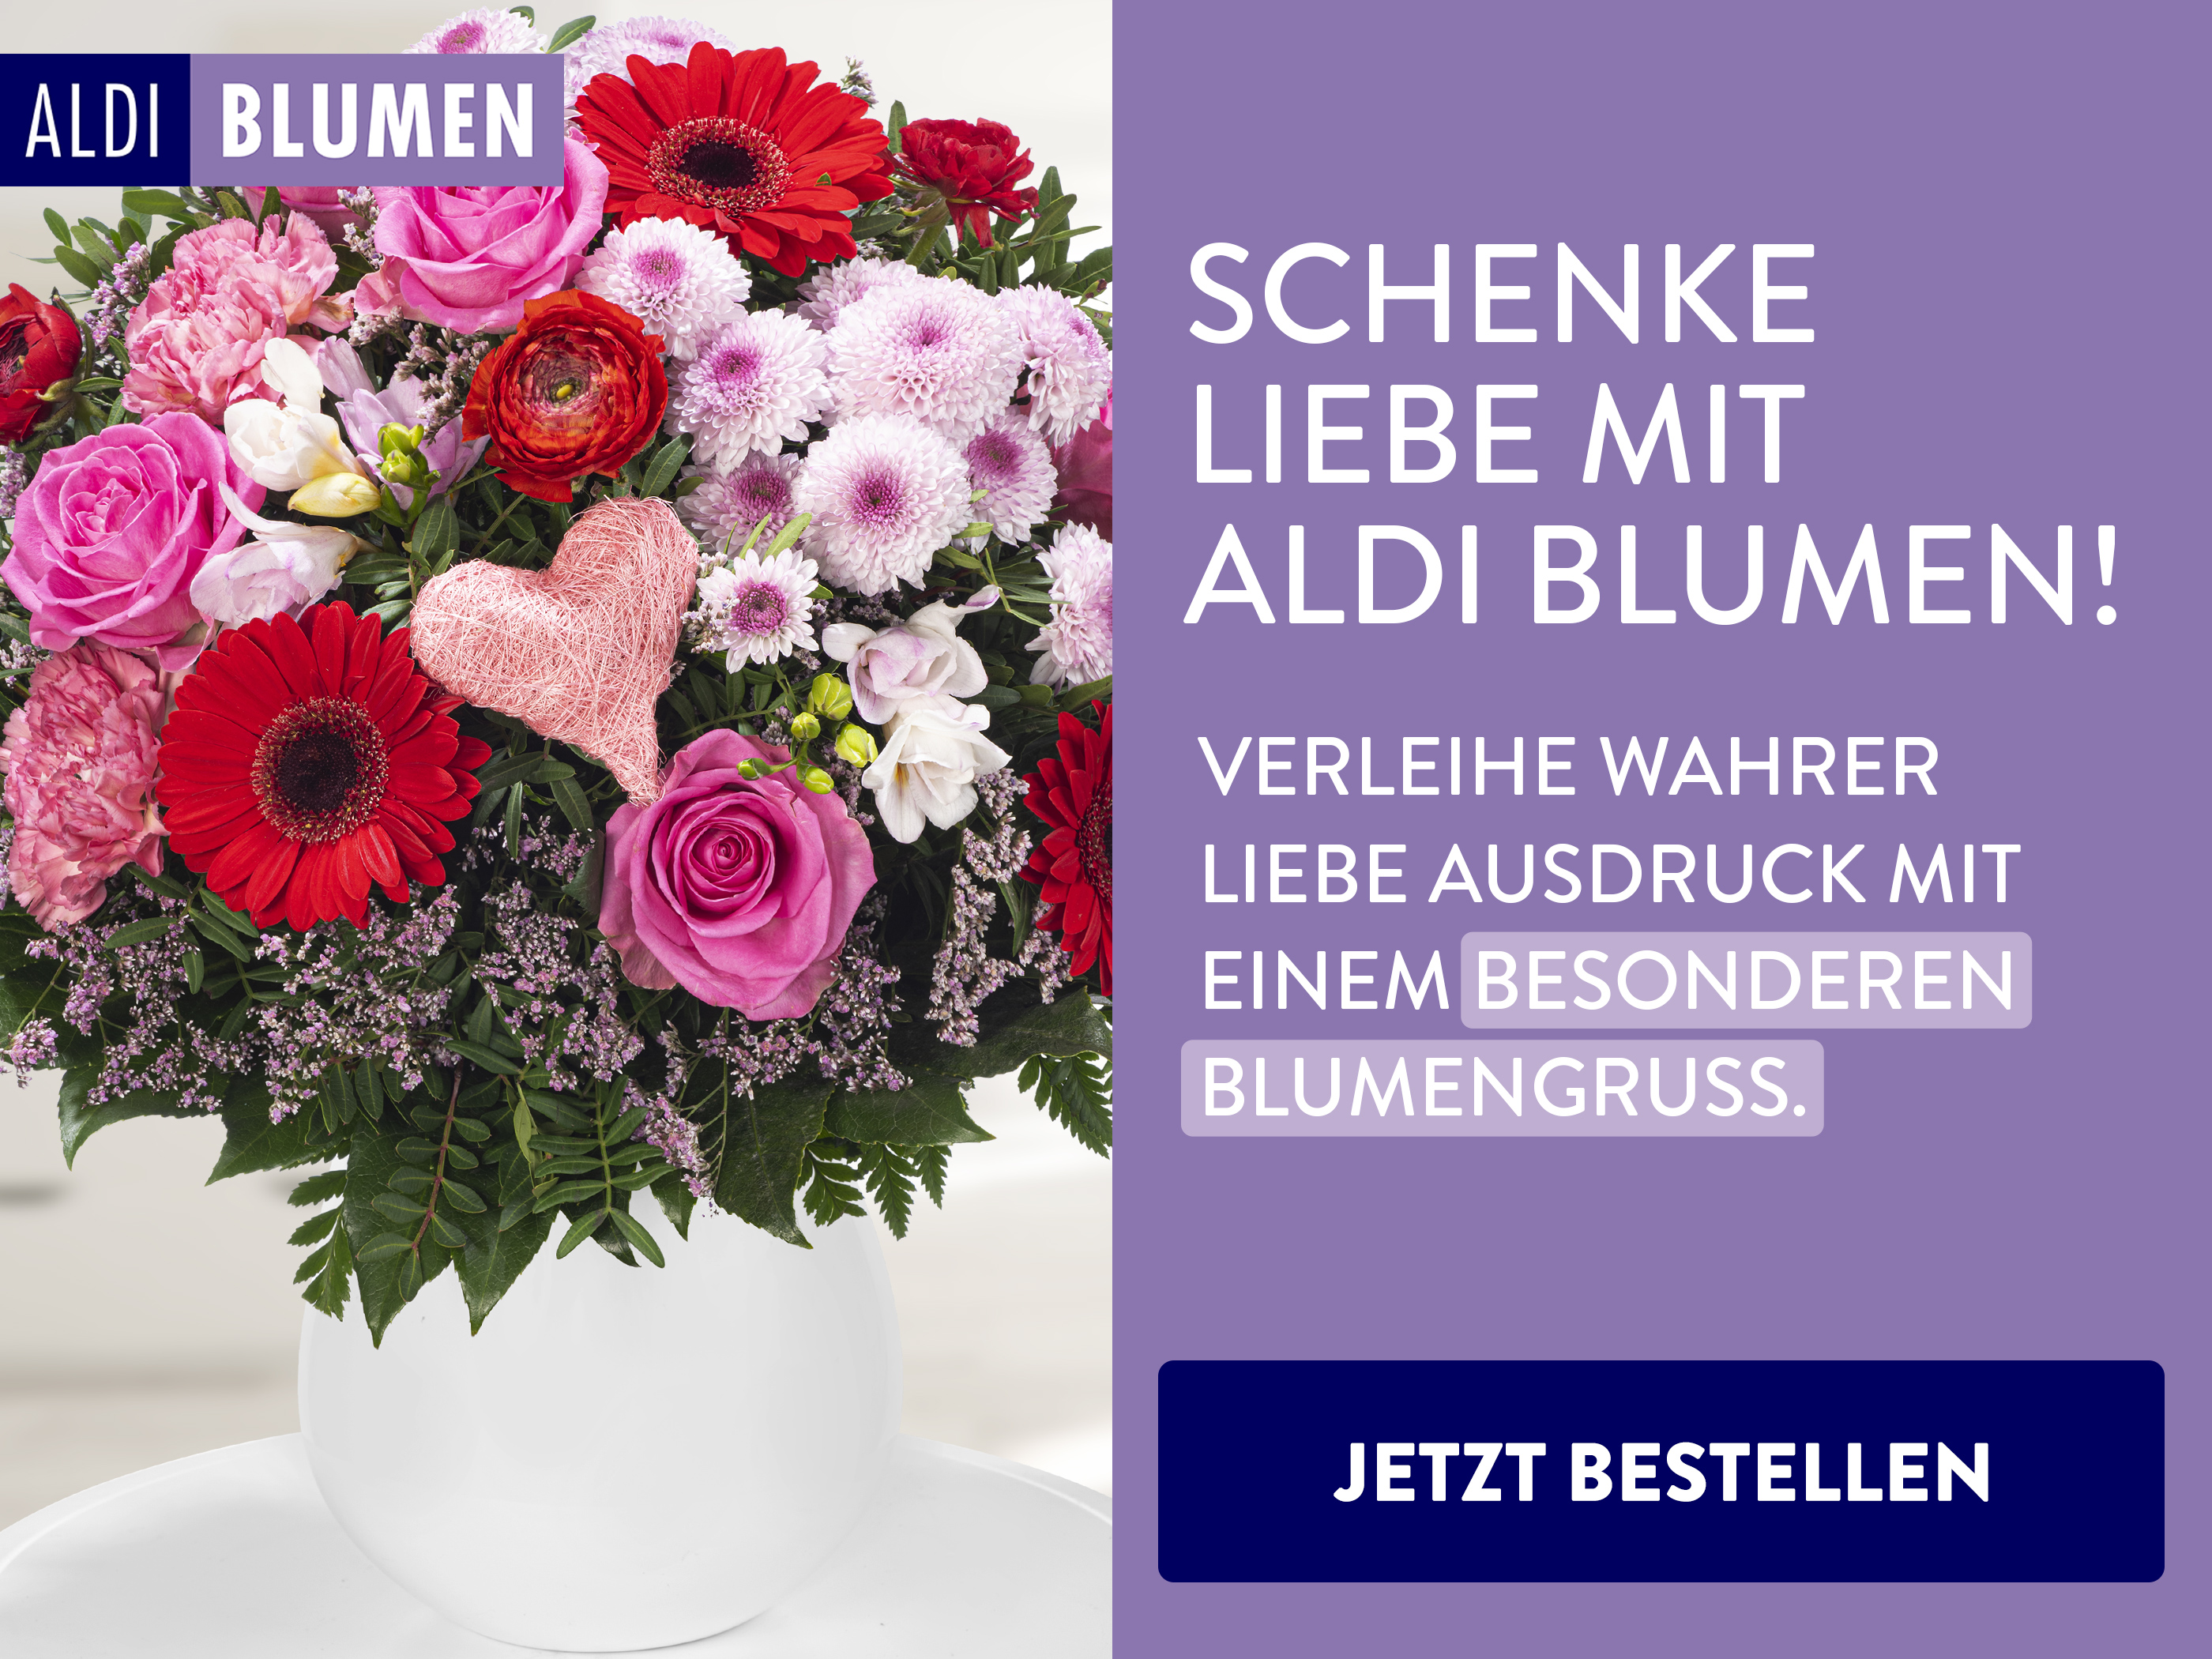 EIn Strauß Blumen mit dem Schriftzug "Schenke Liebe mit ALDI Blumen".